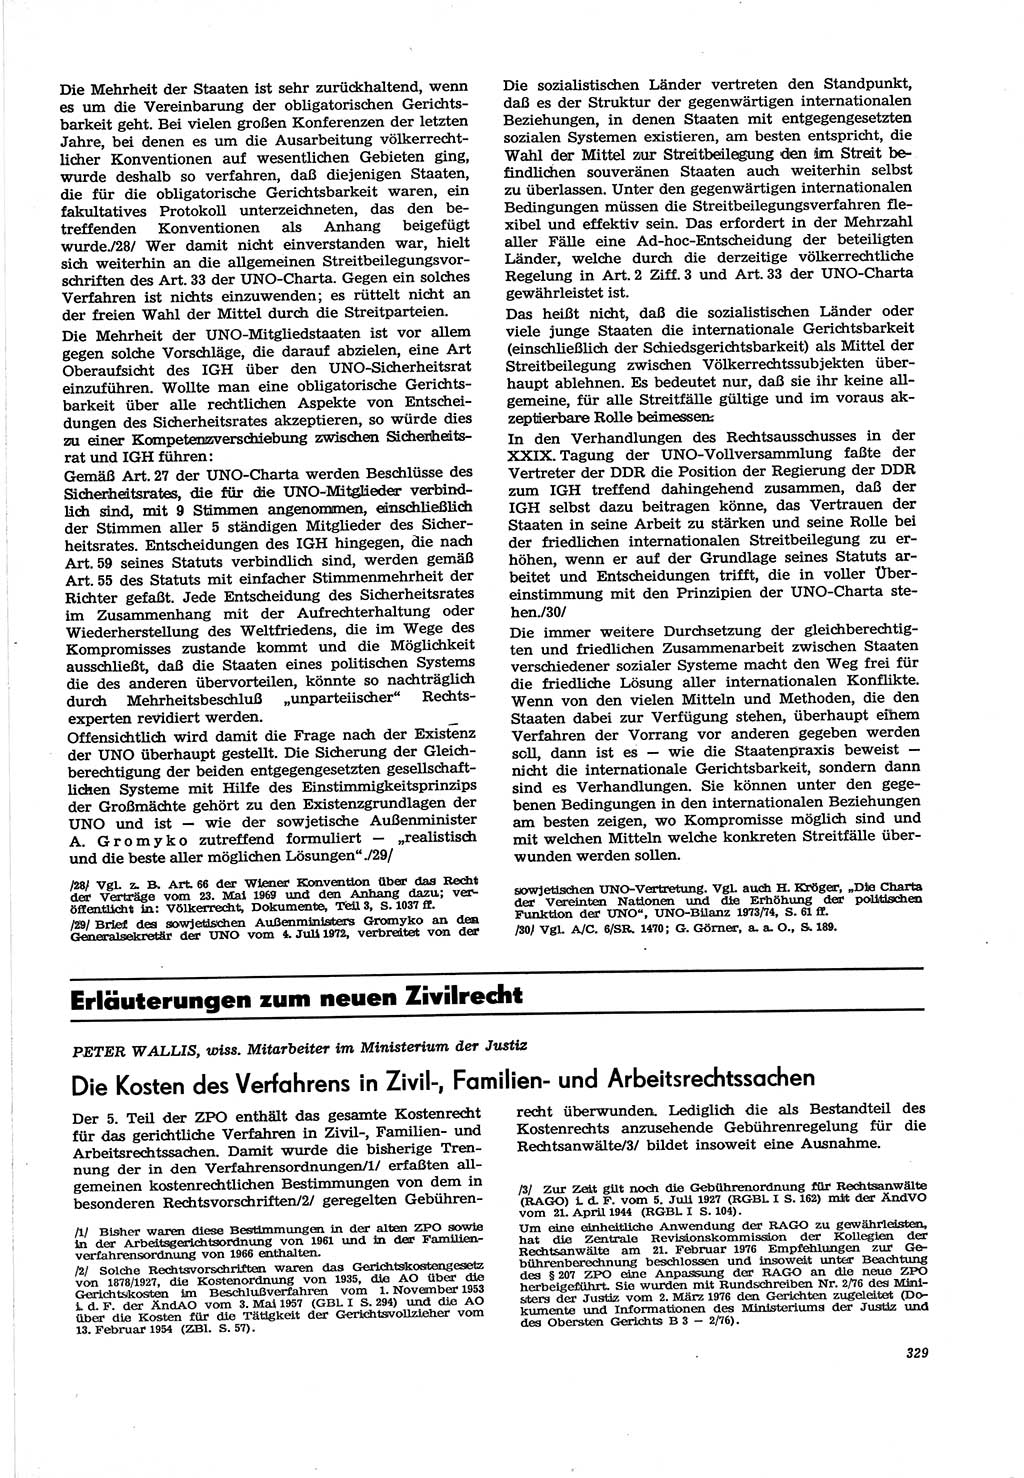 Neue Justiz (NJ), Zeitschrift für Recht und Rechtswissenschaft [Deutsche Demokratische Republik (DDR)], 30. Jahrgang 1976, Seite 329 (NJ DDR 1976, S. 329)